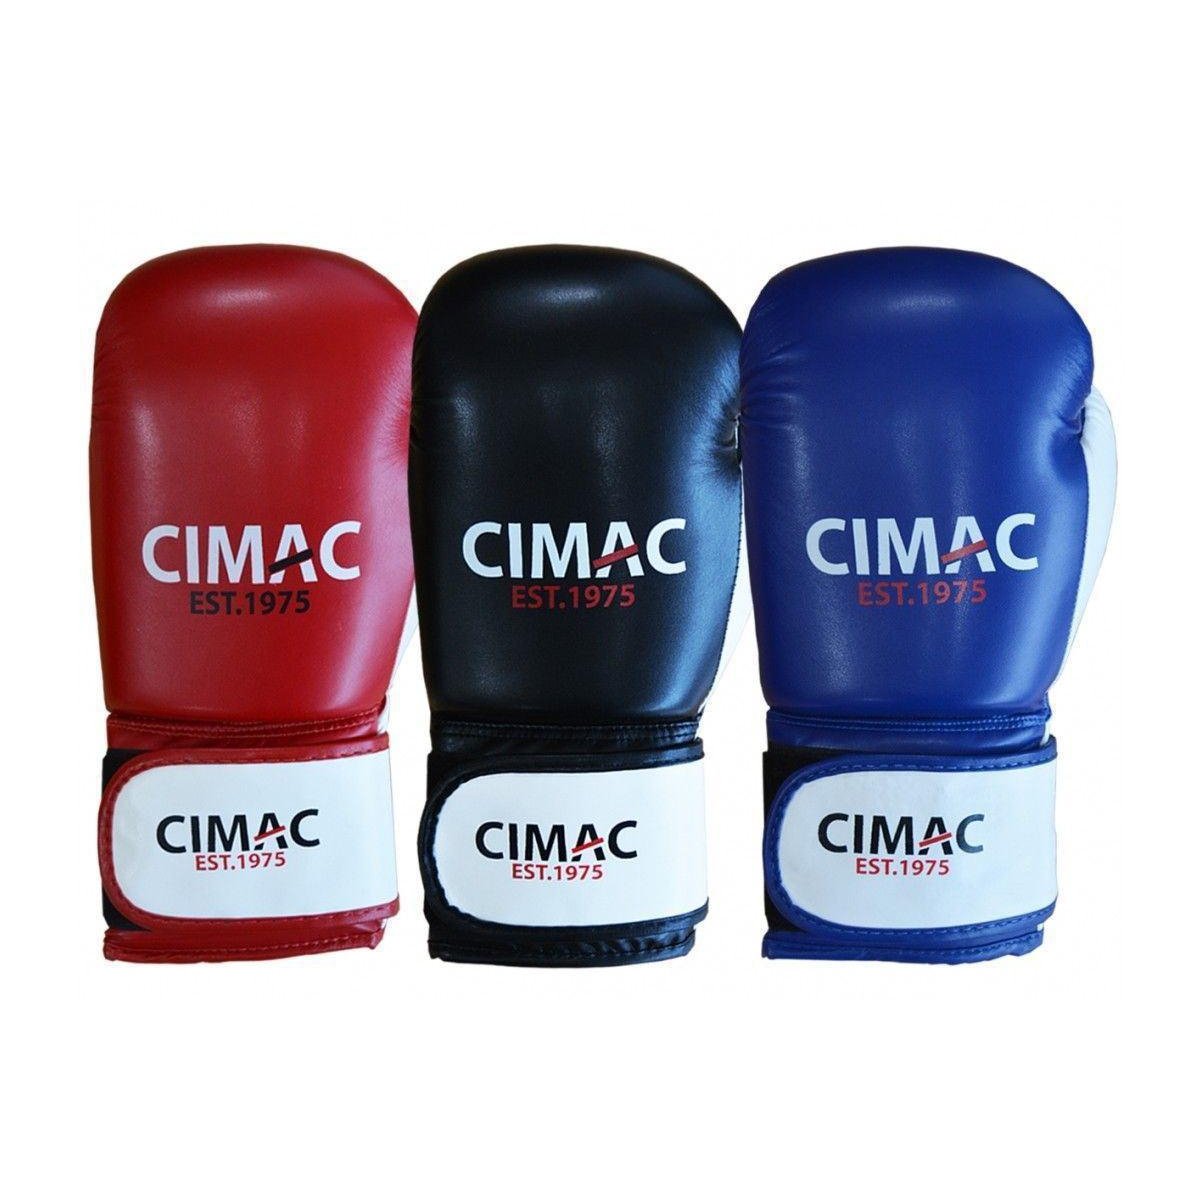 Cimac Boxing Gloves Kickboxing